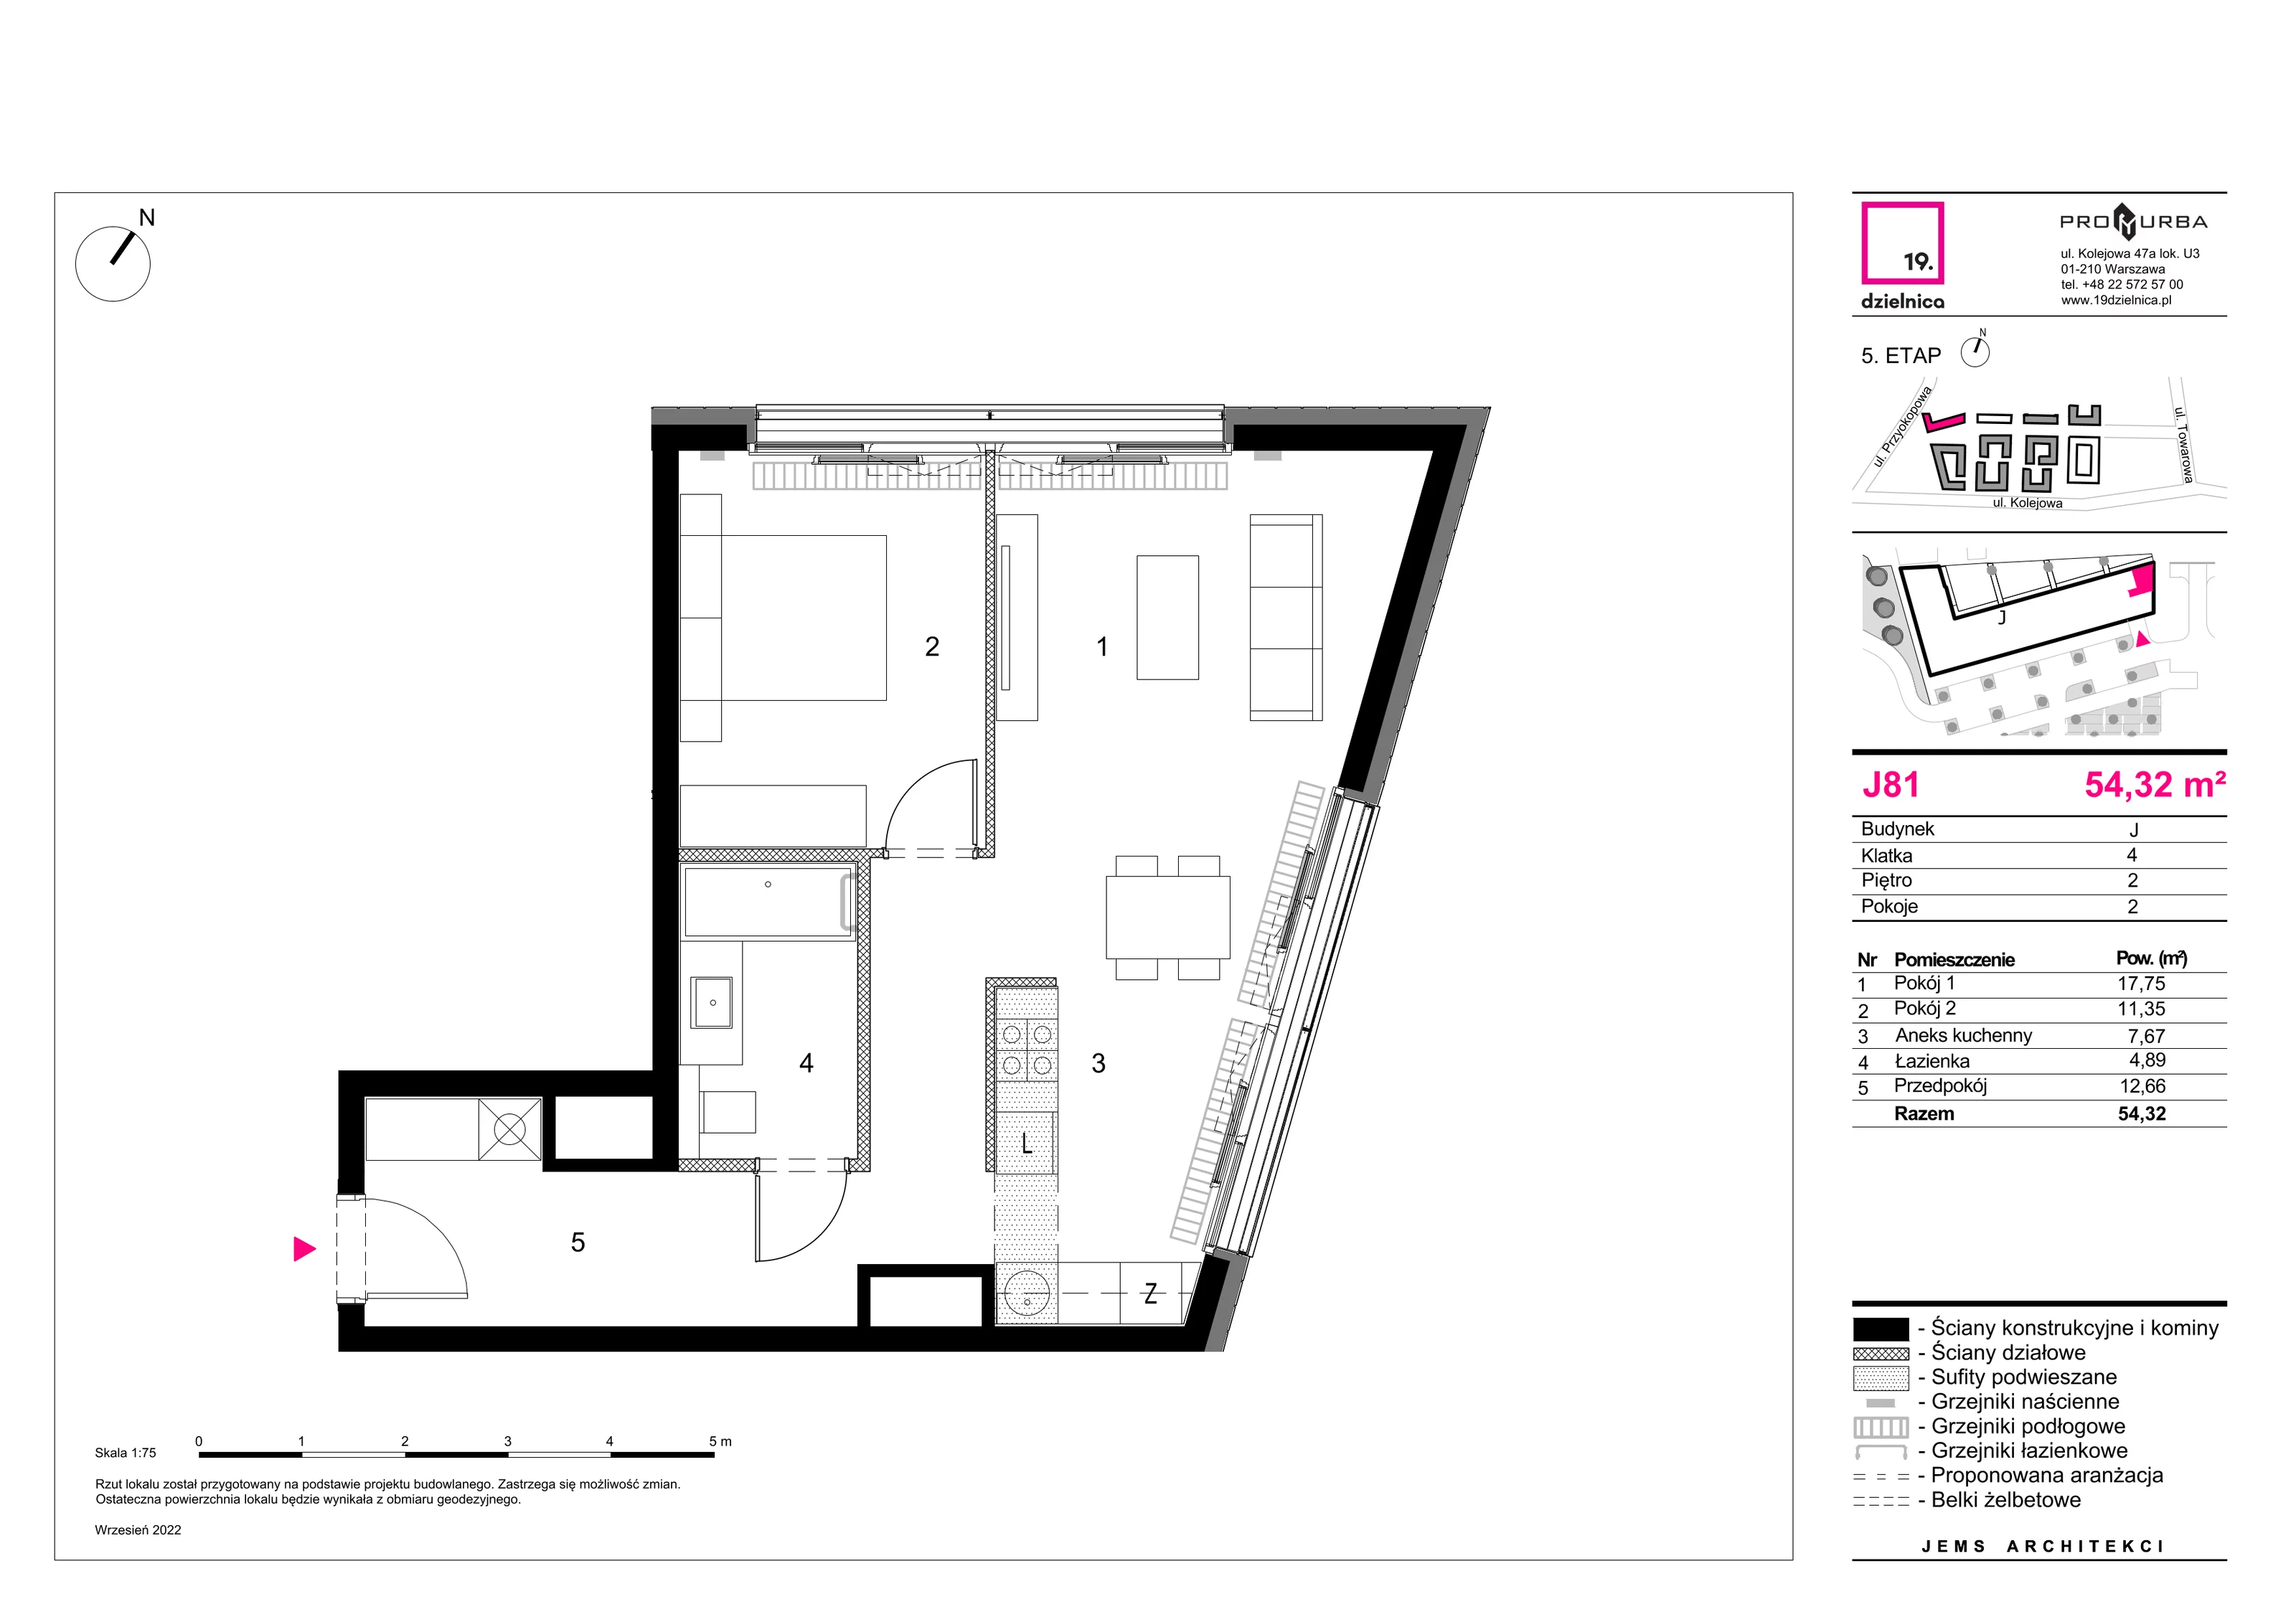 Mieszkanie 54,32 m², piętro 2, oferta nr J81, 19. Dzielnica V etap, Warszawa, Wola, Czyste, ul. Kolejowa 49